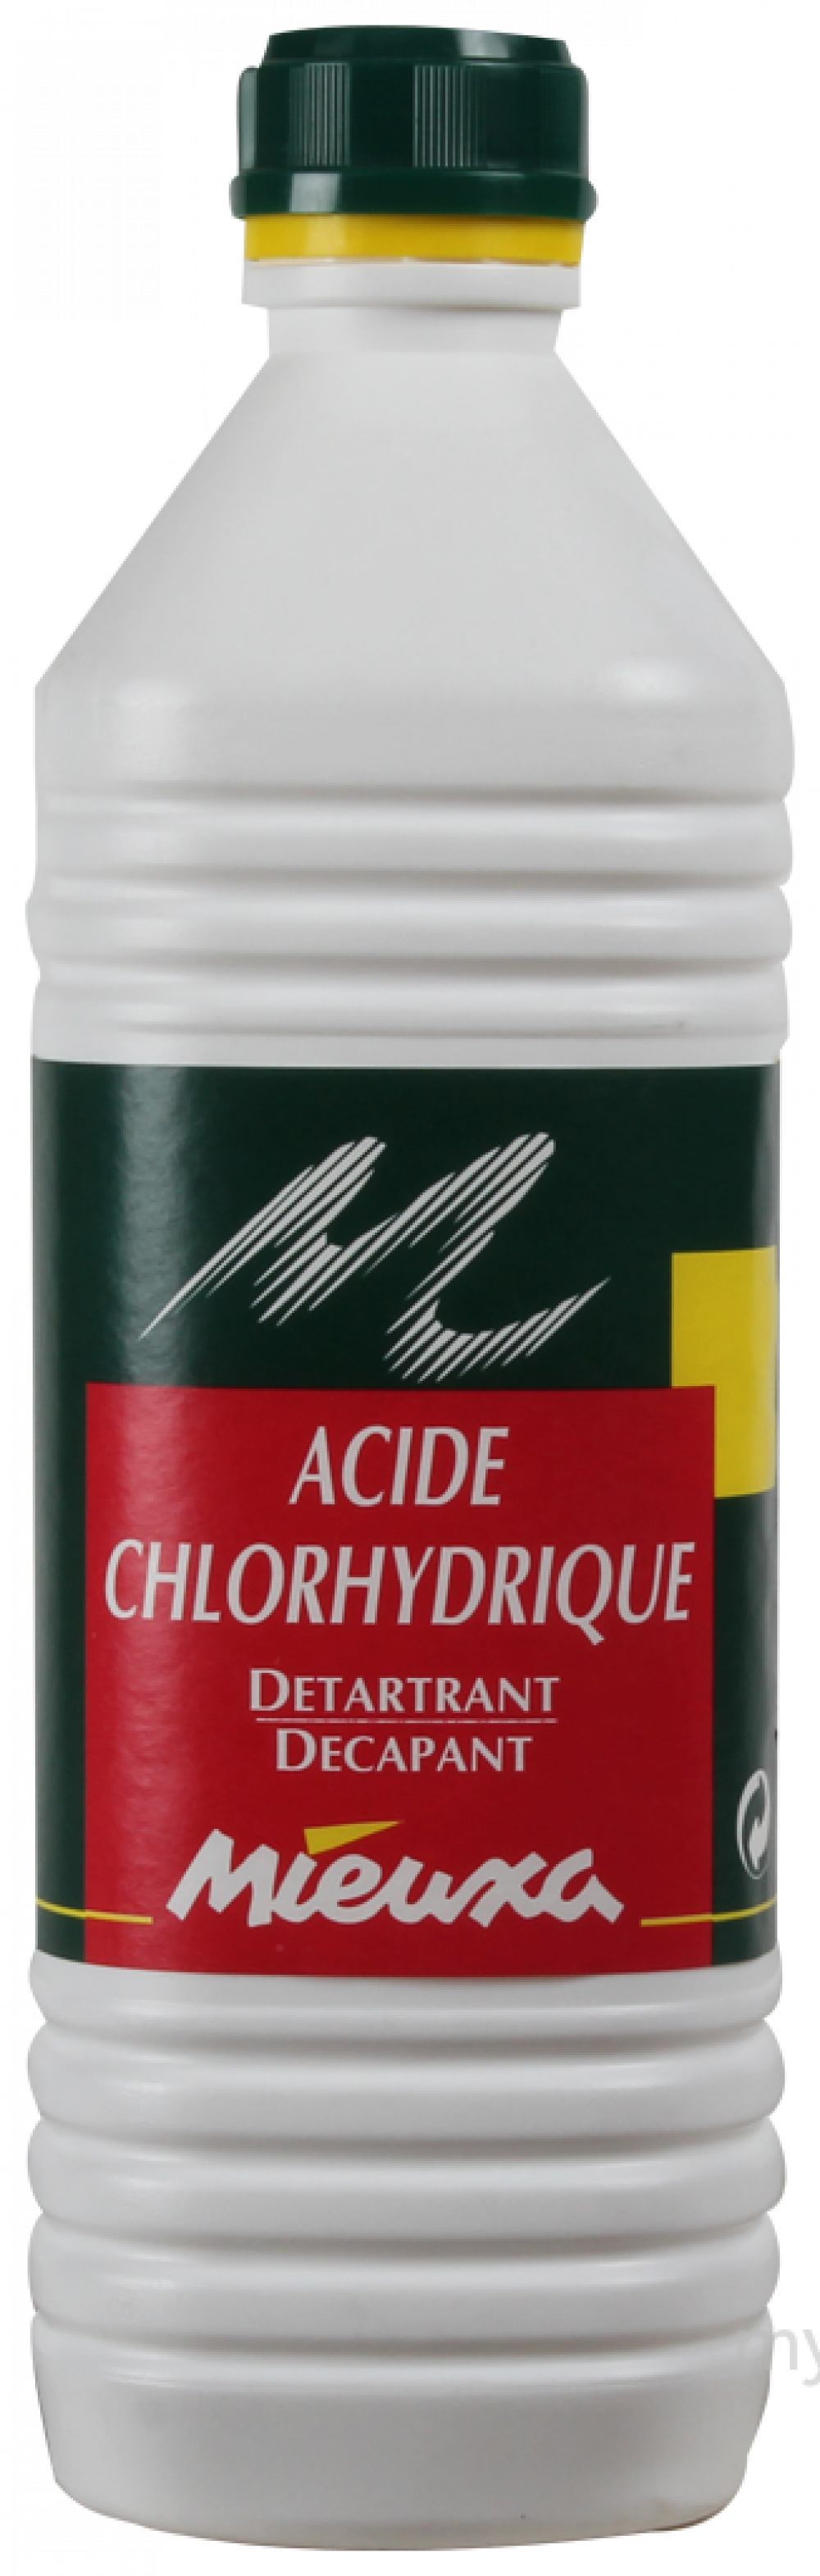 Acide chlorhydrique 1 L FOREVER